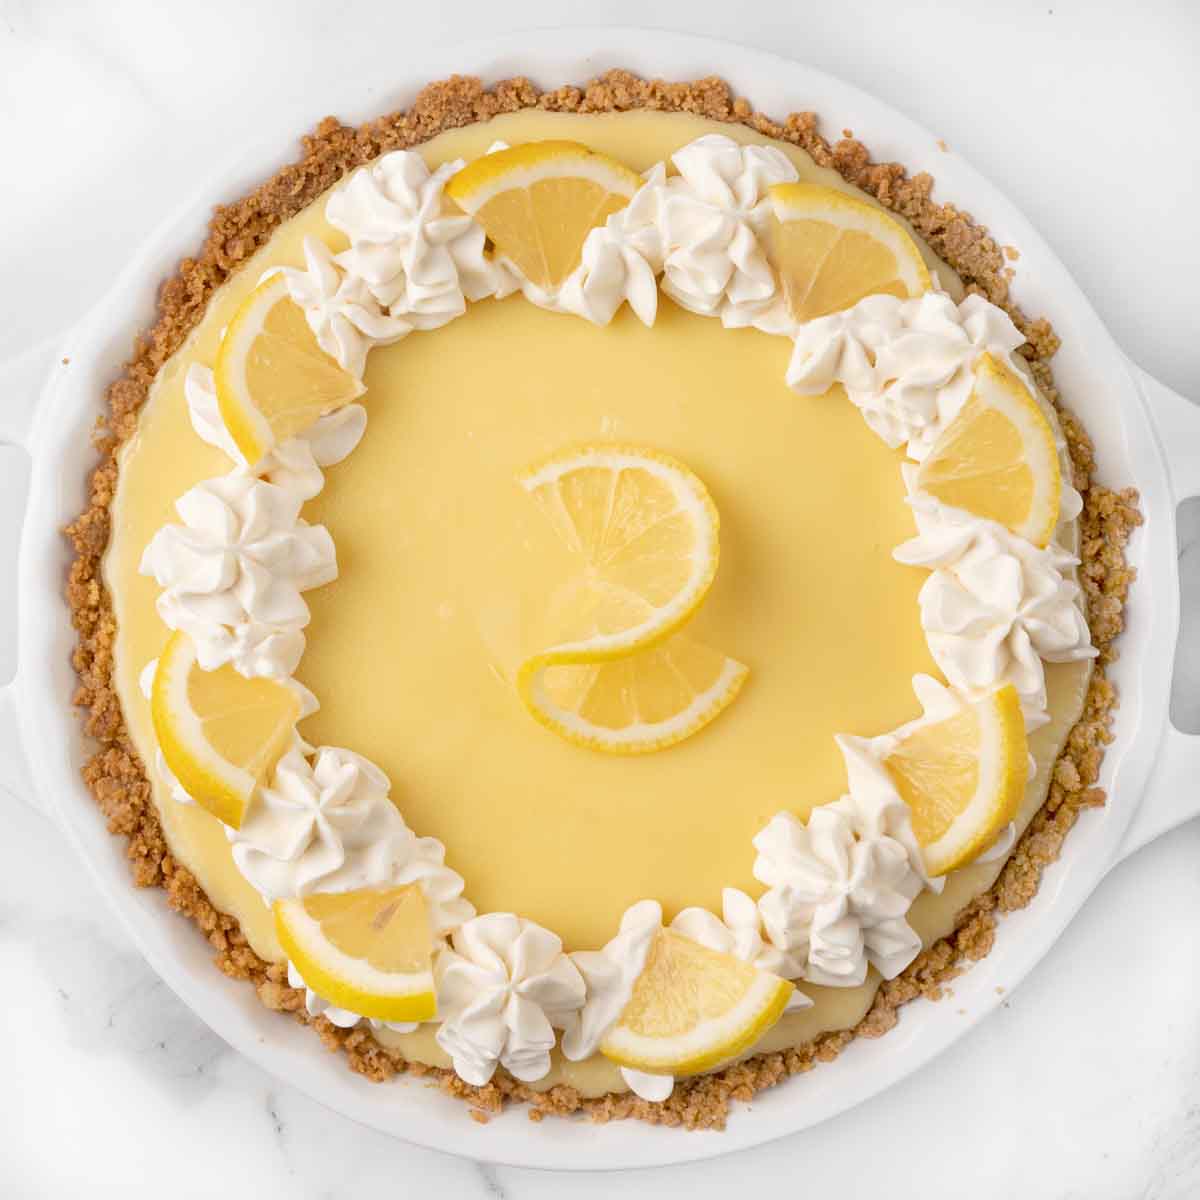 Krem şanti ve limon dilimleri ile limon kremalı pasta